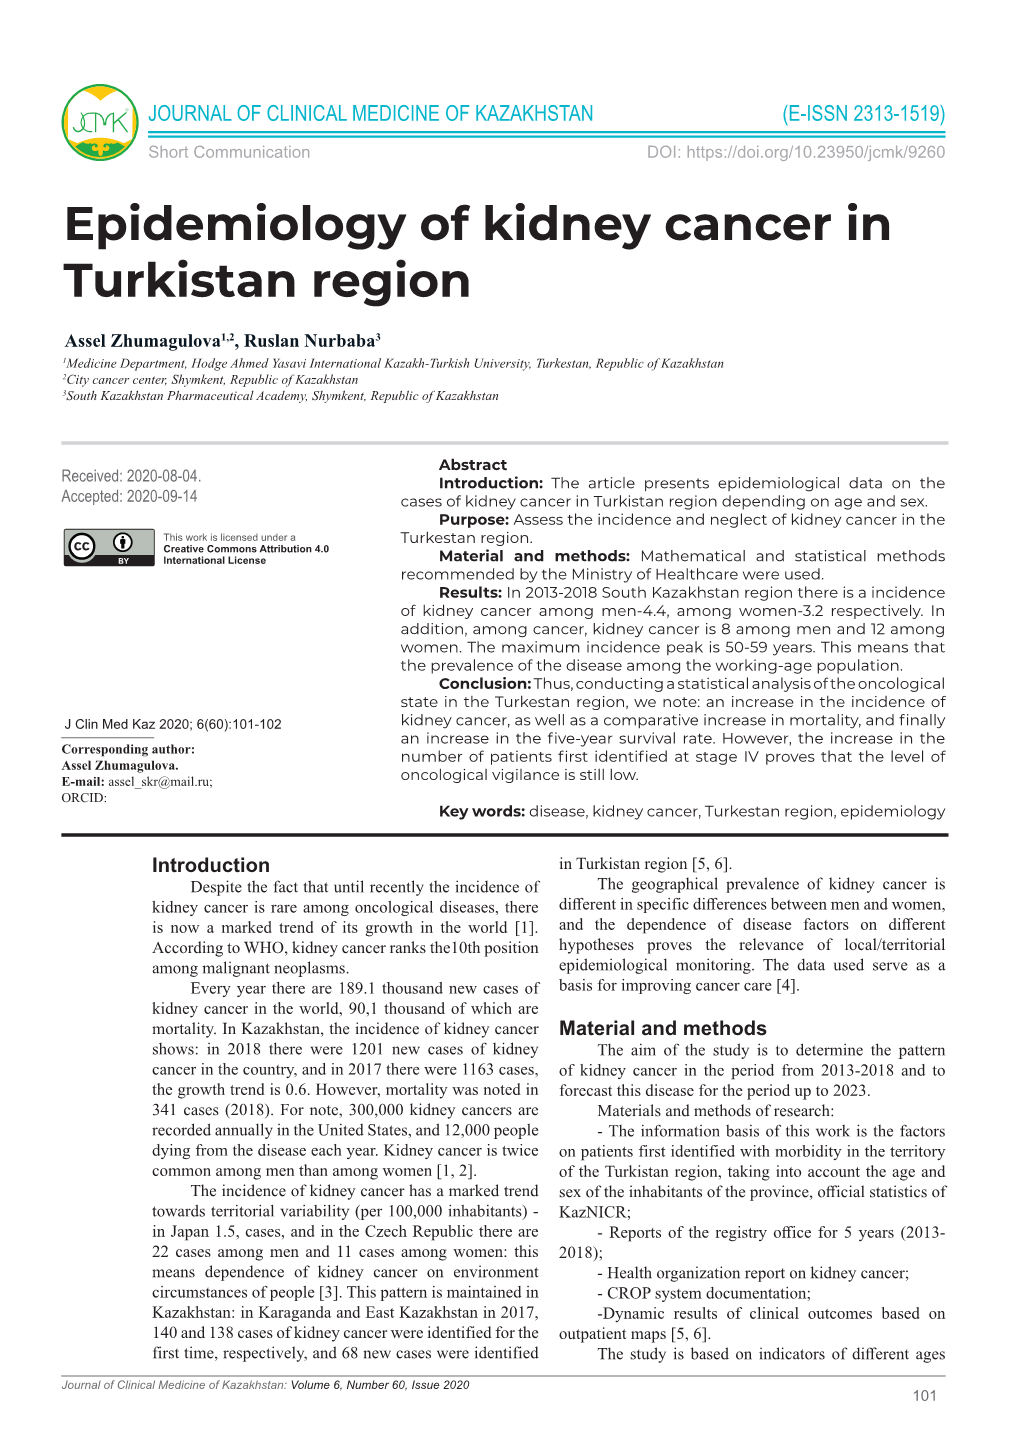 Epidemiology of Kidney Cancer in Turkistan Region